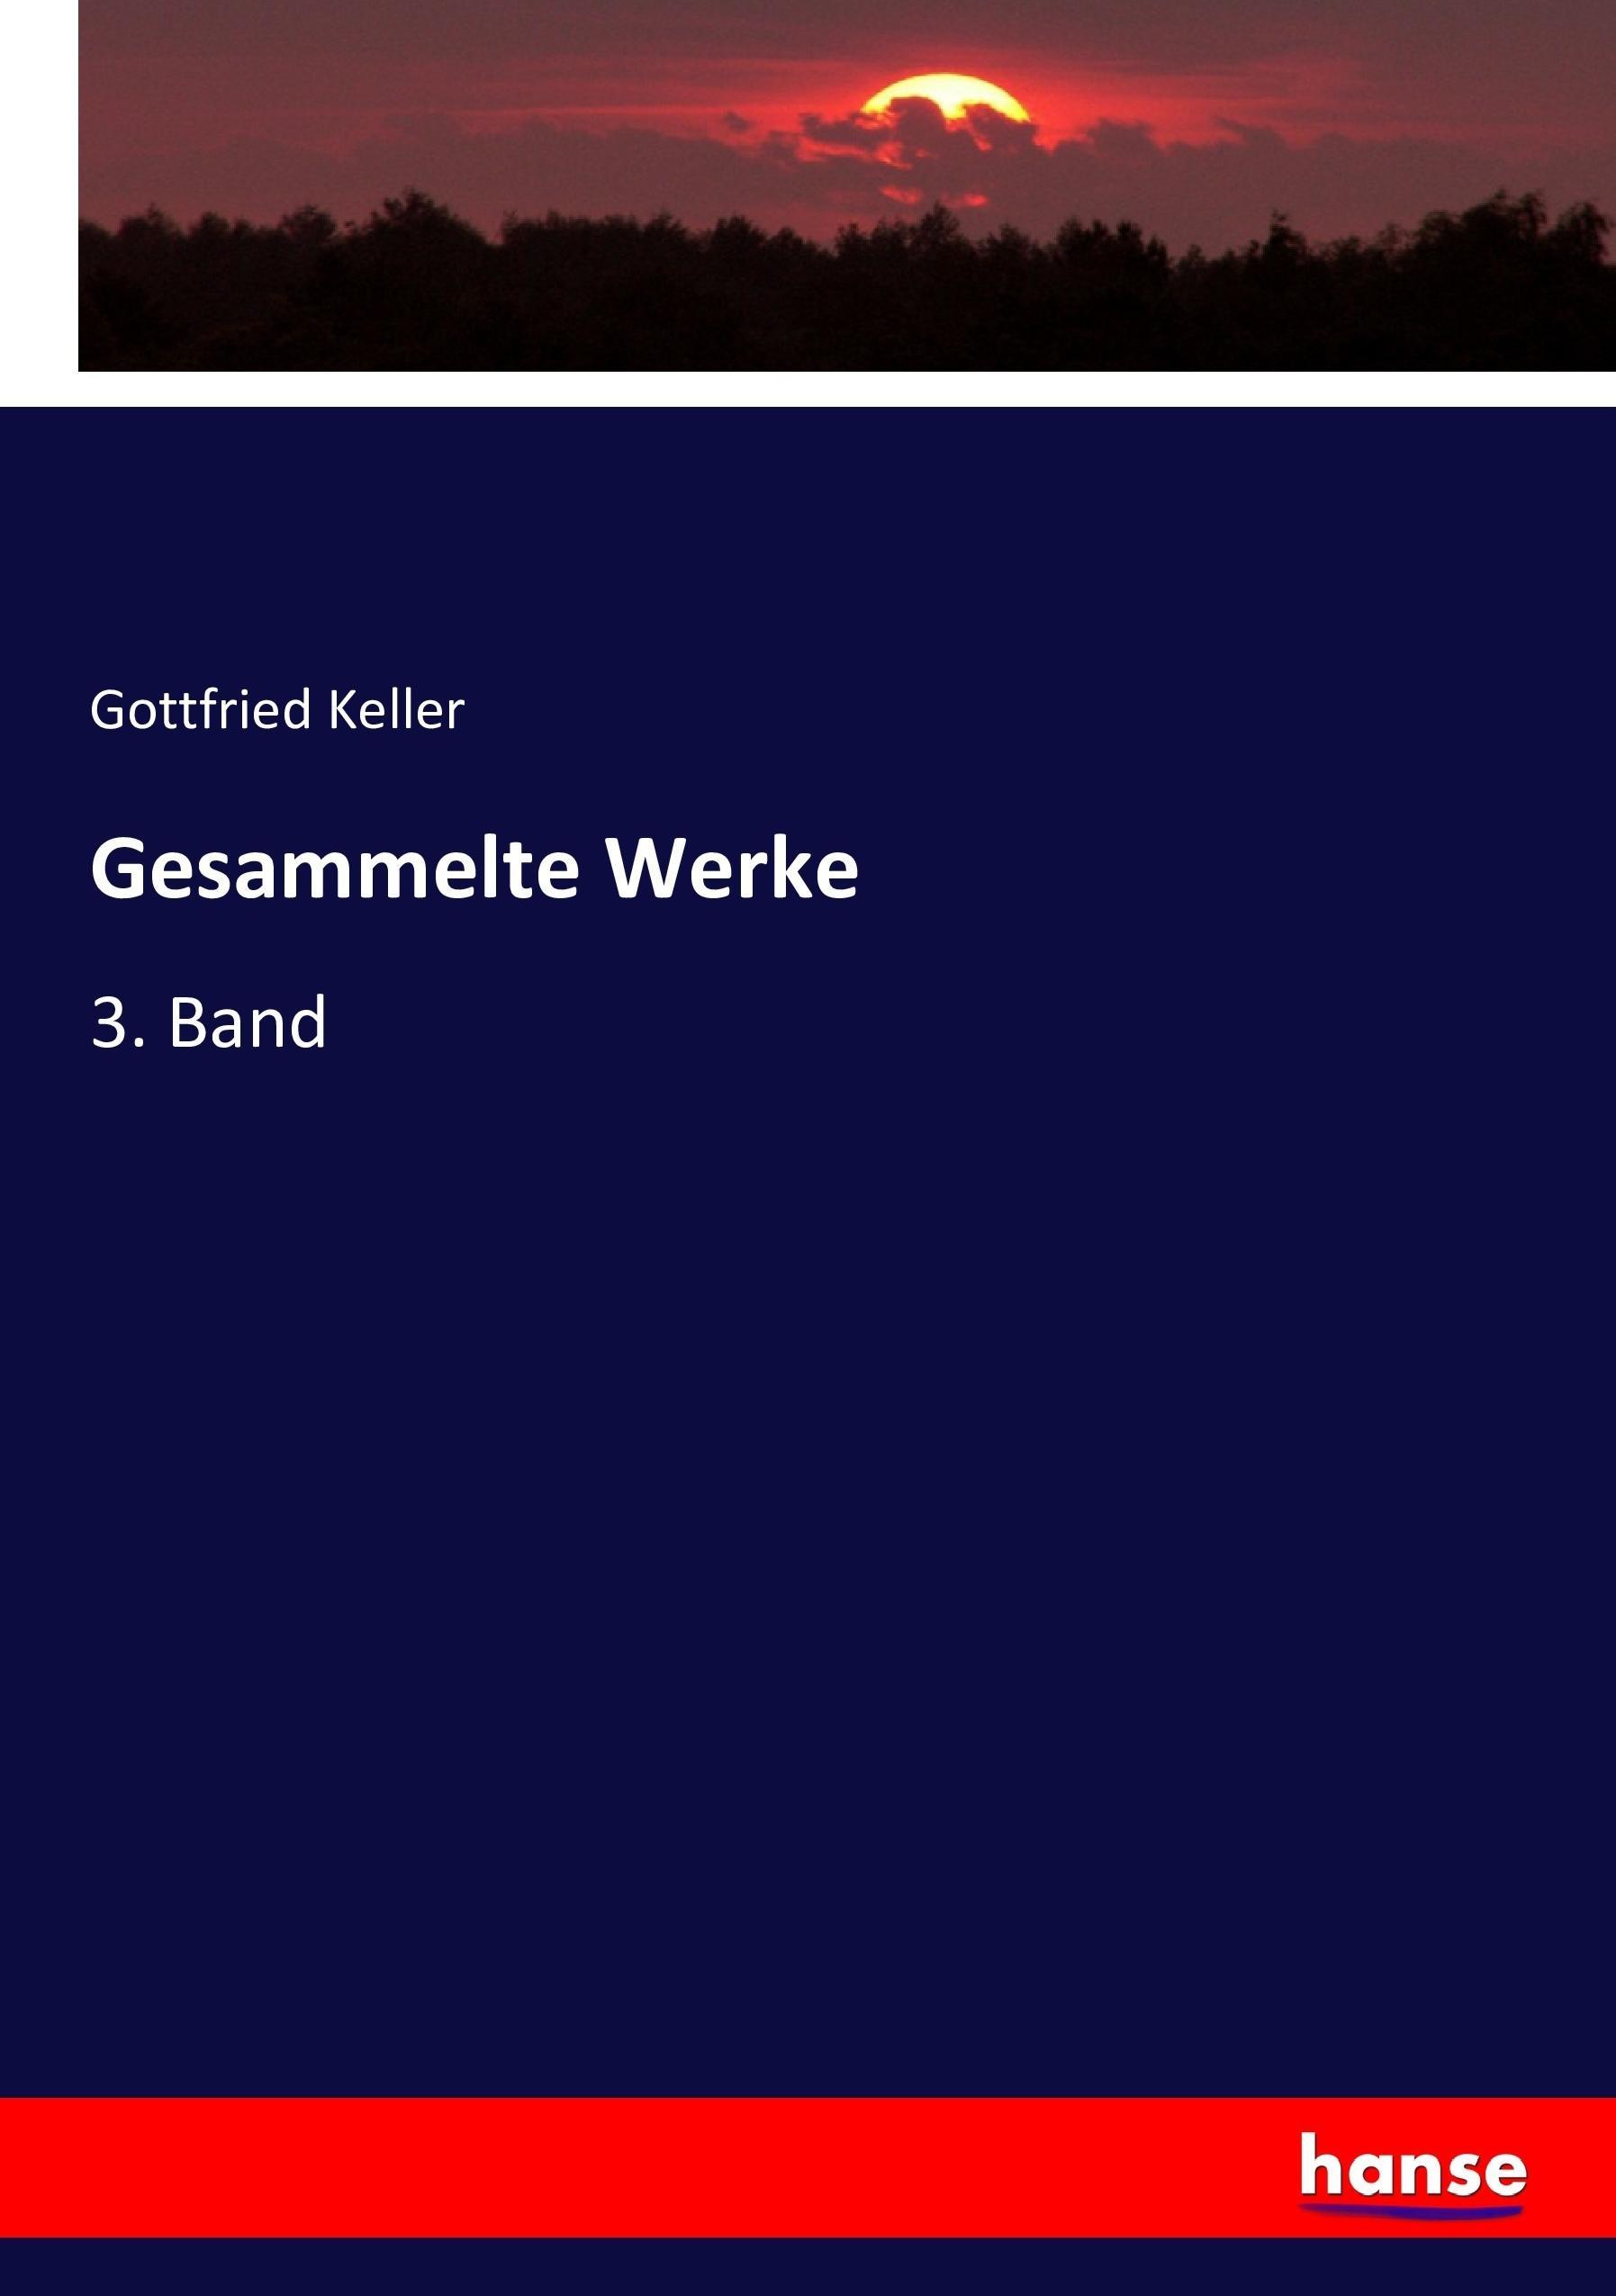 Gesammelte Werke - Keller, Gottfried